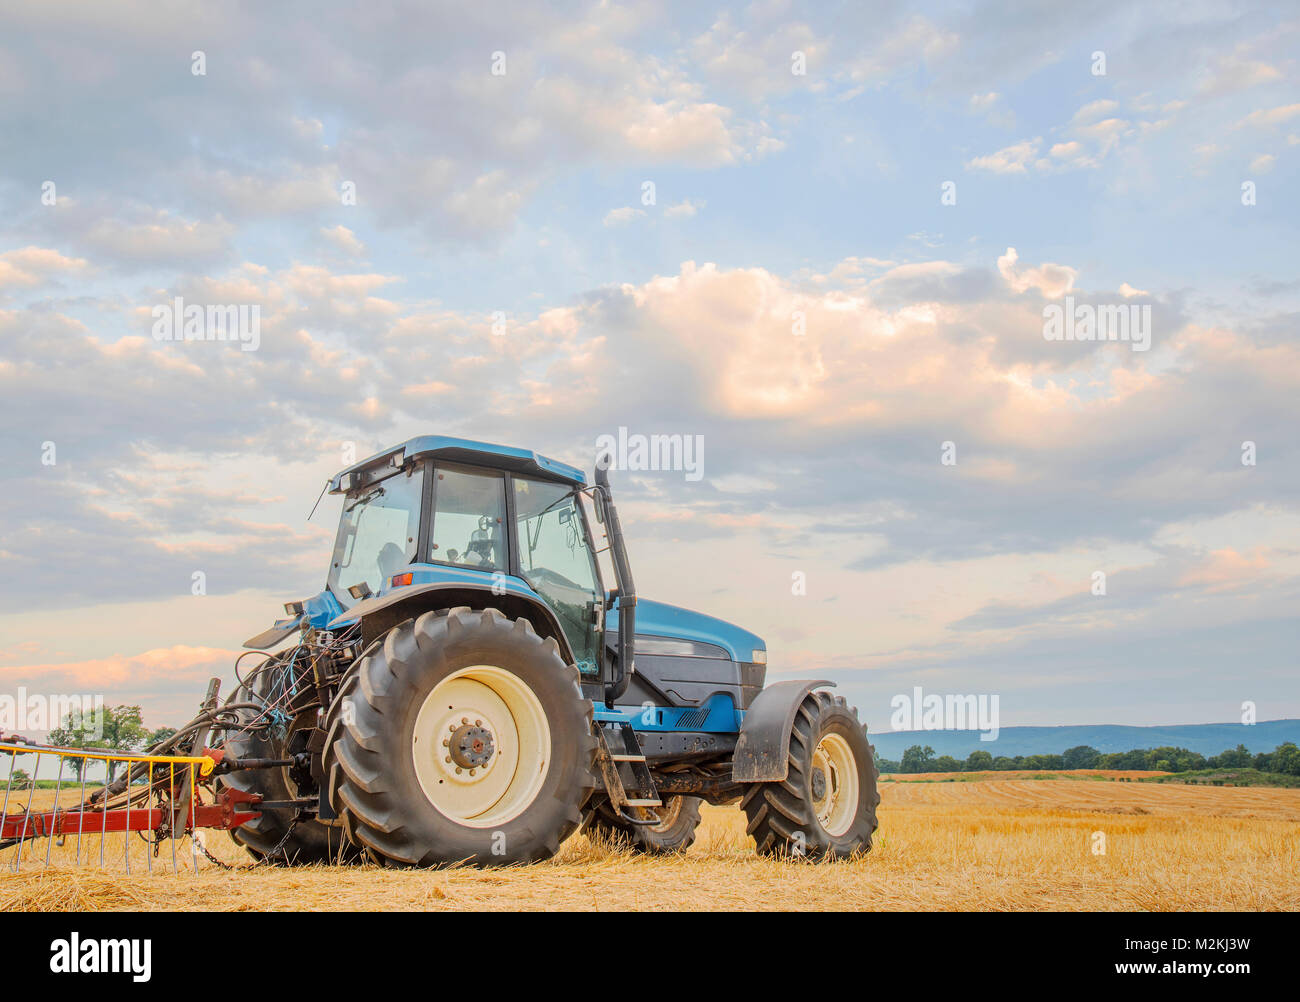 Eine blaue Traktor beherrscht eine vor kurzem Schnitt hayfield vor dem Hintergrund eines blauen Himmel und Wolken. Catoctin sind Berge in der Ferne. Stockfoto